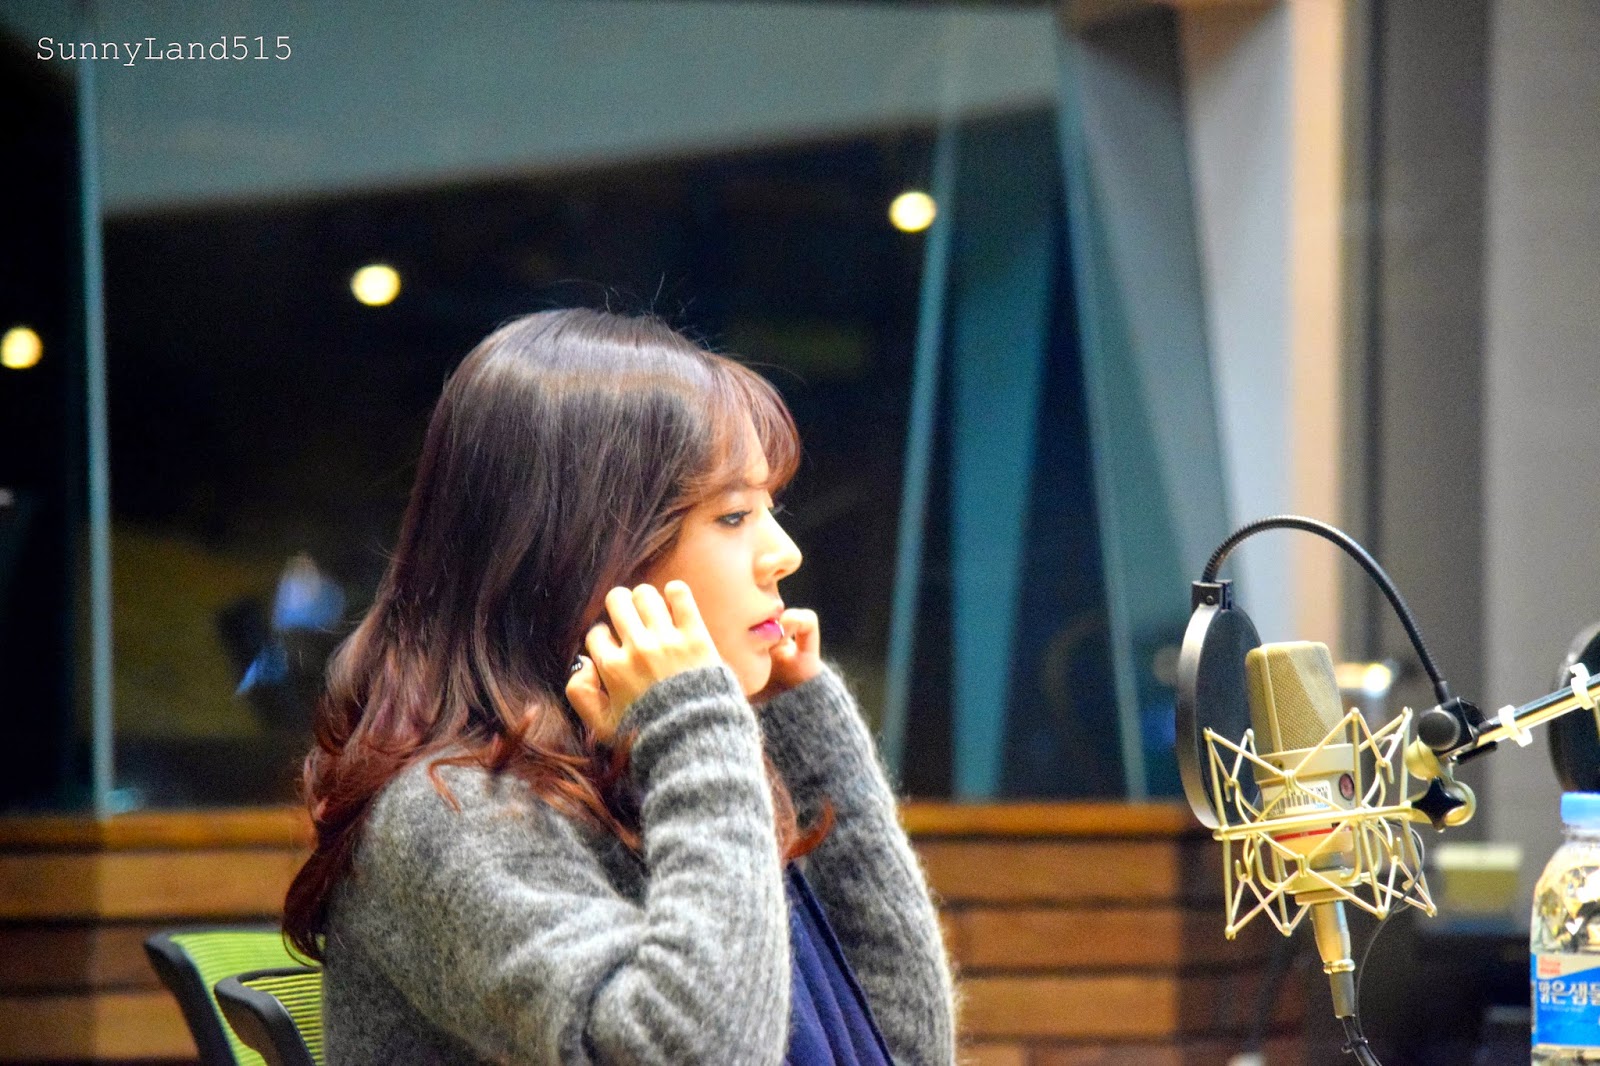 [OTHER][06-02-2015]Hình ảnh mới nhất từ DJ Sunny tại Radio MBC FM4U - "FM Date" - Page 10 DSC_0019_Fotor